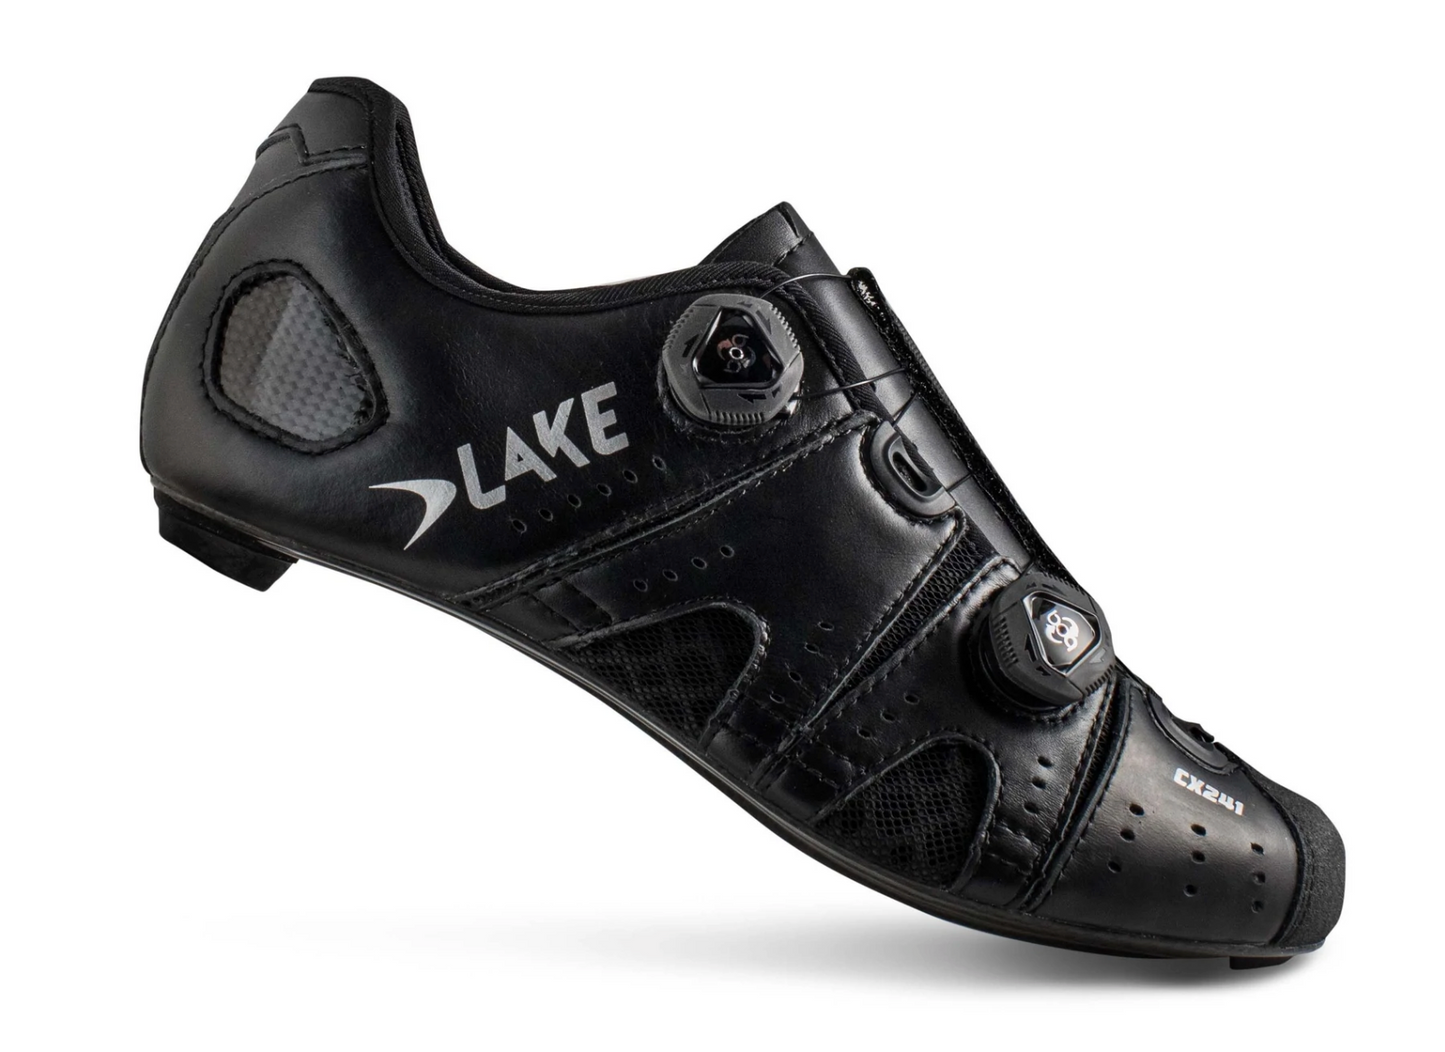 NEW Lake CX241 Road Cycling Shoe, Black/Silver, 44